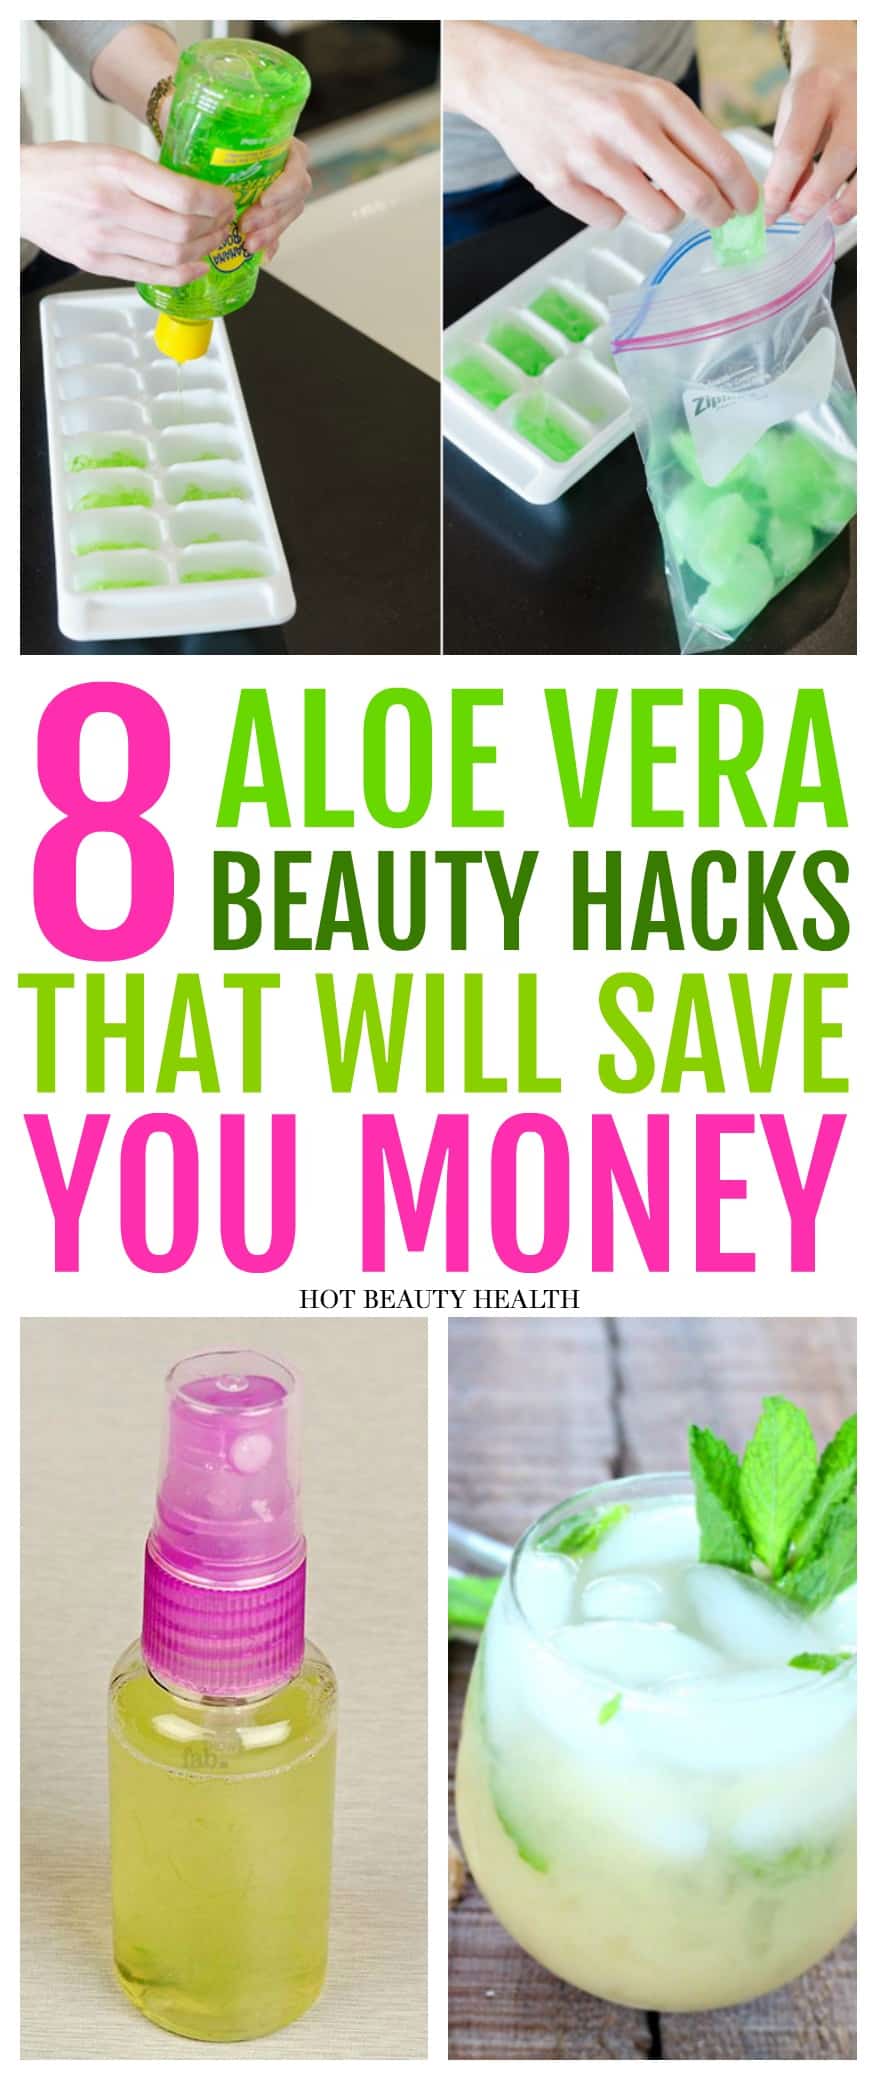 aloe vera beauty hacks